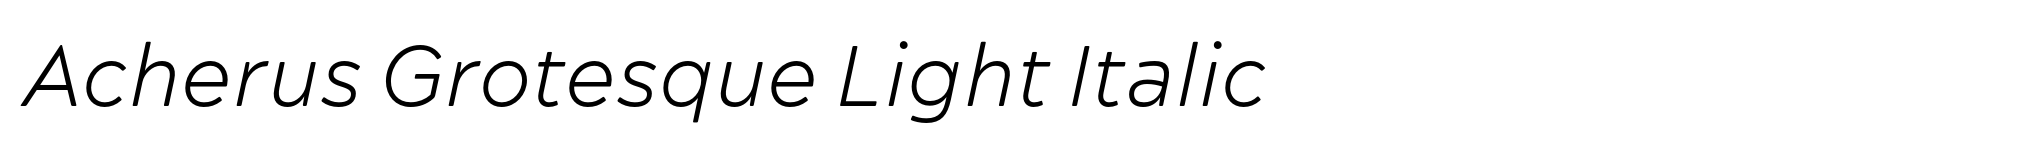 Acherus Grotesque Light Italic image